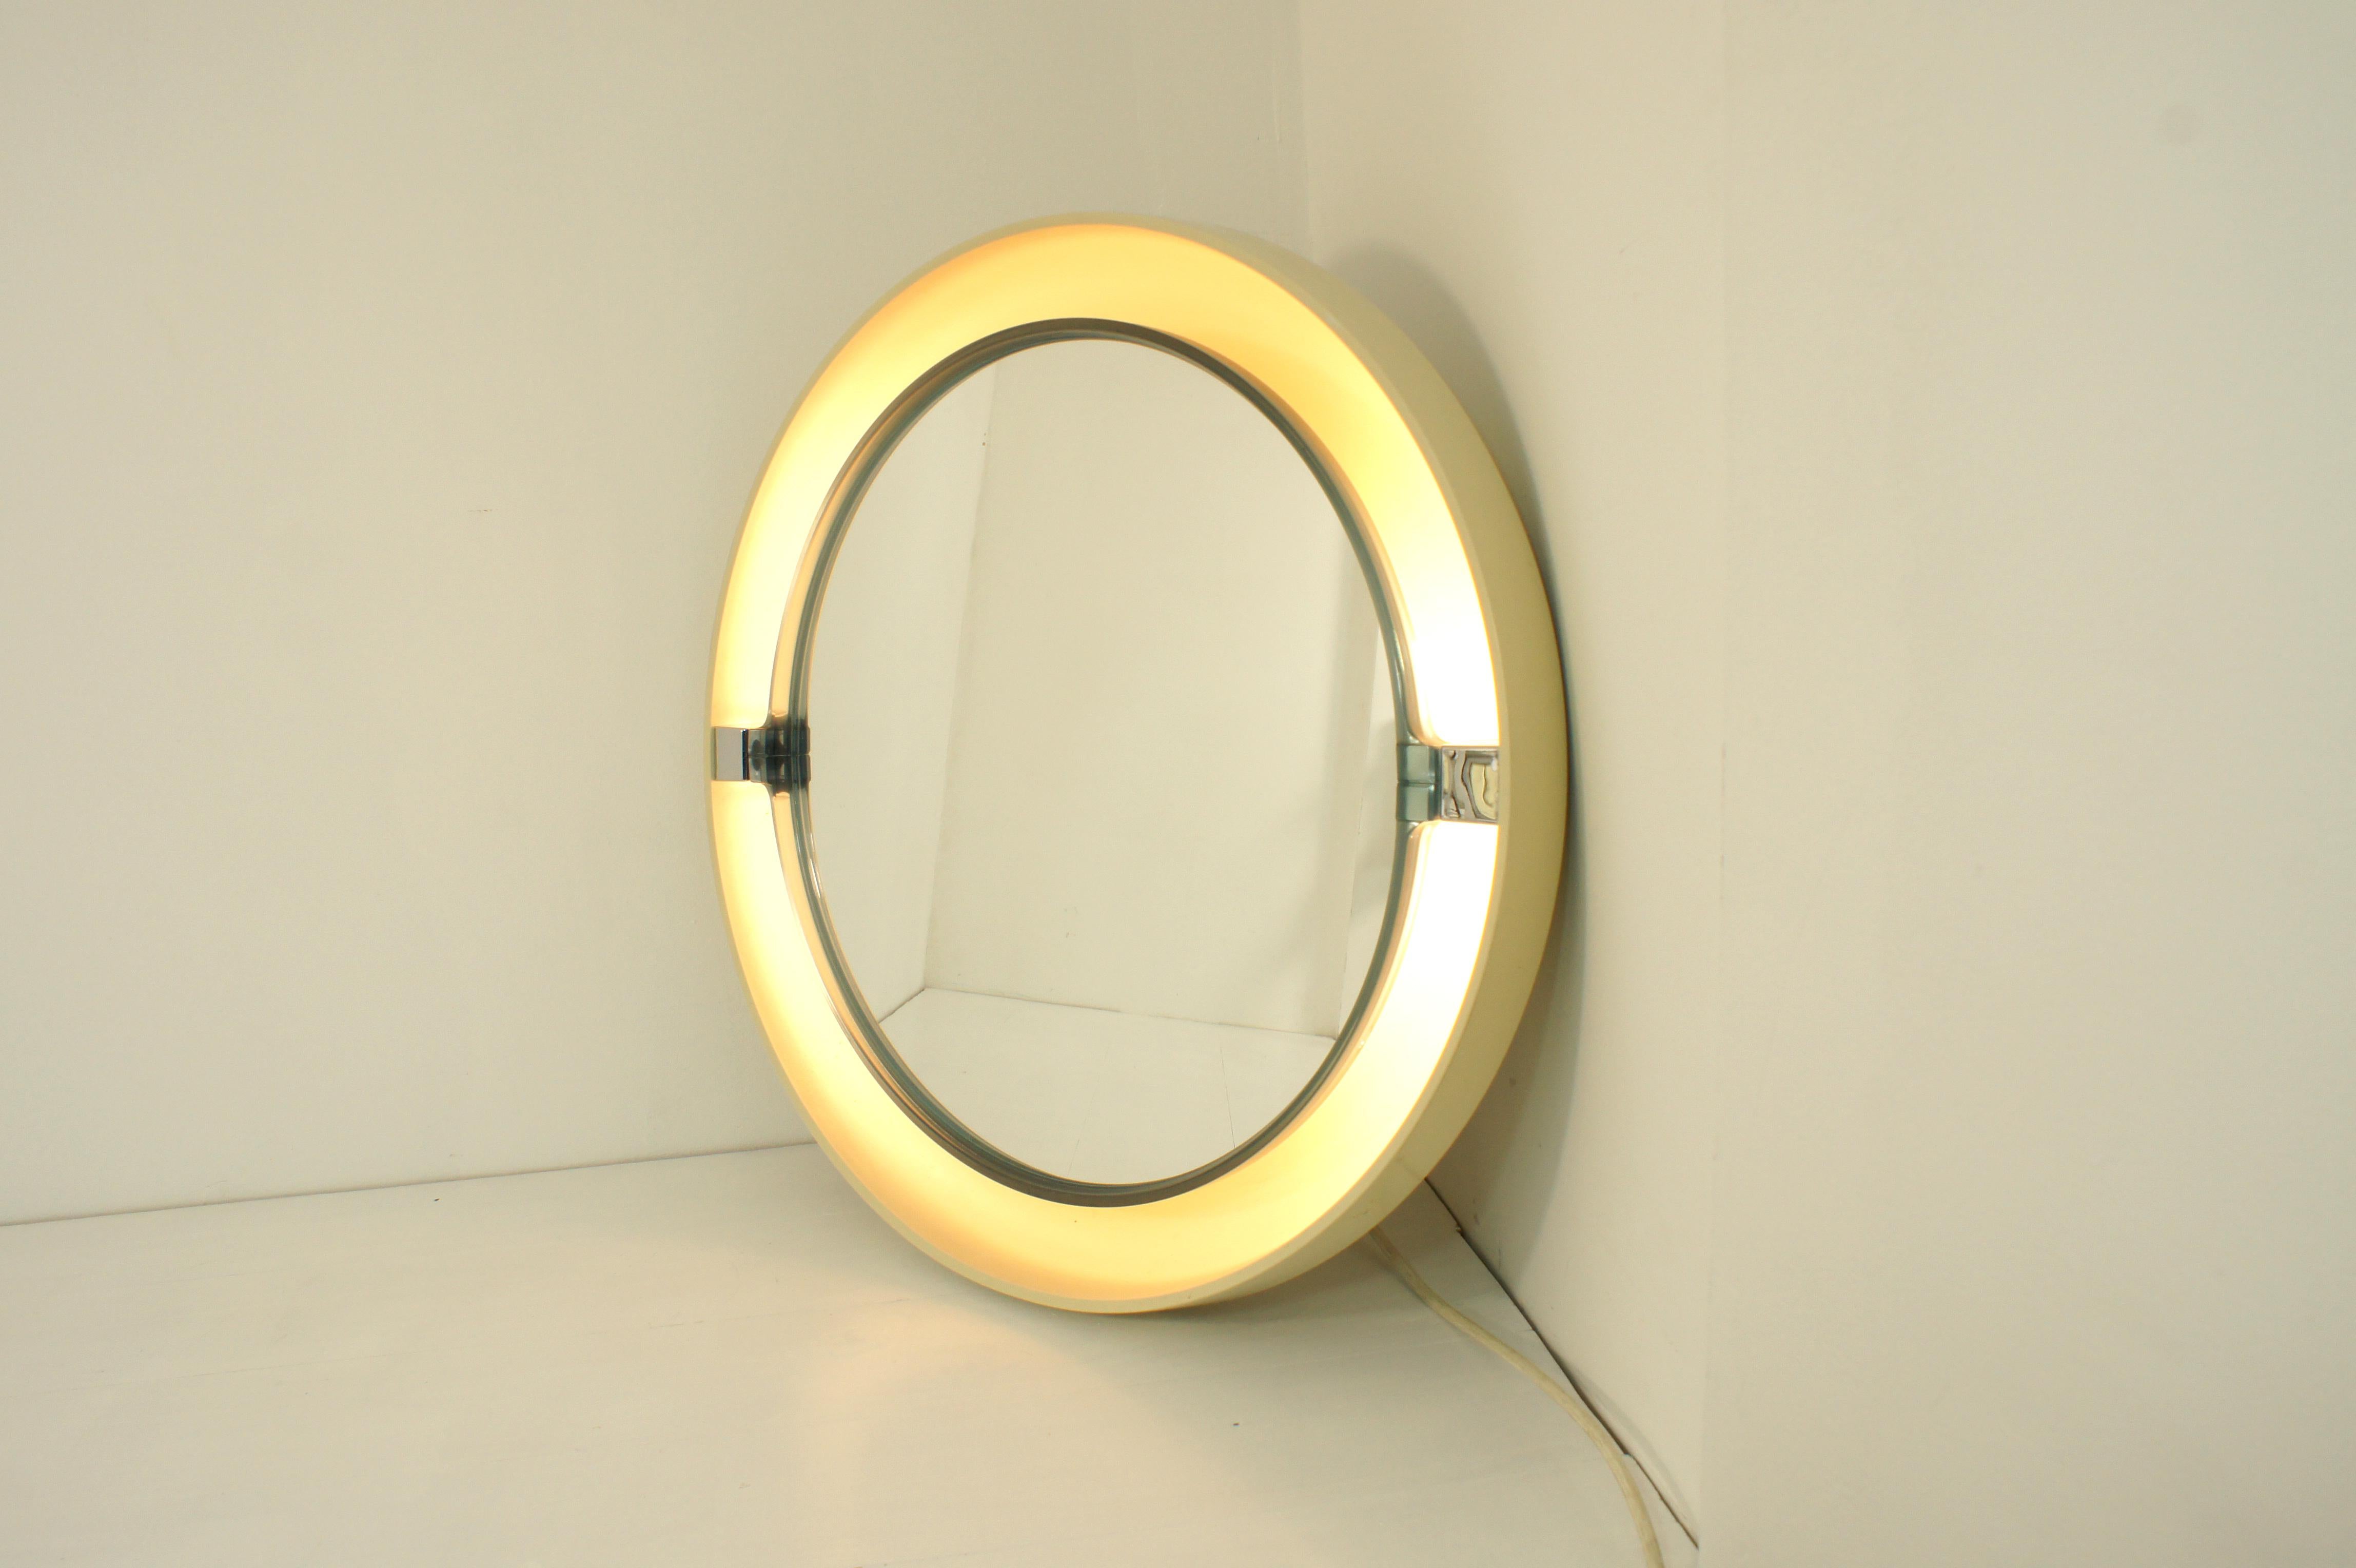 Miroir basculant et rétro-éclairé fabriqué dans les années 1970 par Allibert, Allemagne.

Coque en abs blanc sur laquelle est monté un cadre basculant bleu semi-transparent dans lequel est inclus le miroir.

Quatre ampoules E14 sont placées entre le